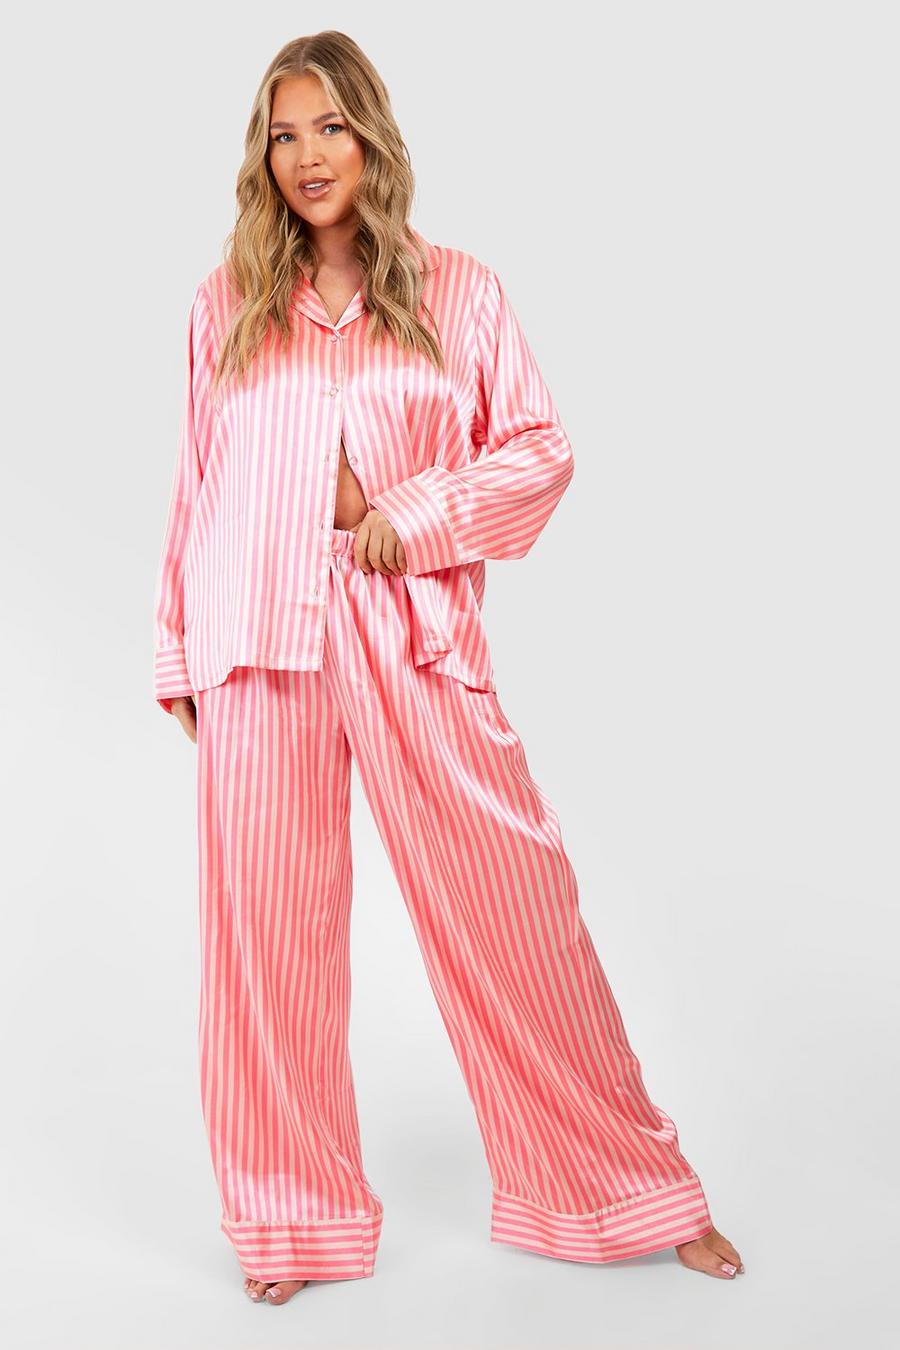 Candy pink Plus Satijnen Gestreepte Pyjama Set Met Broek image number 1